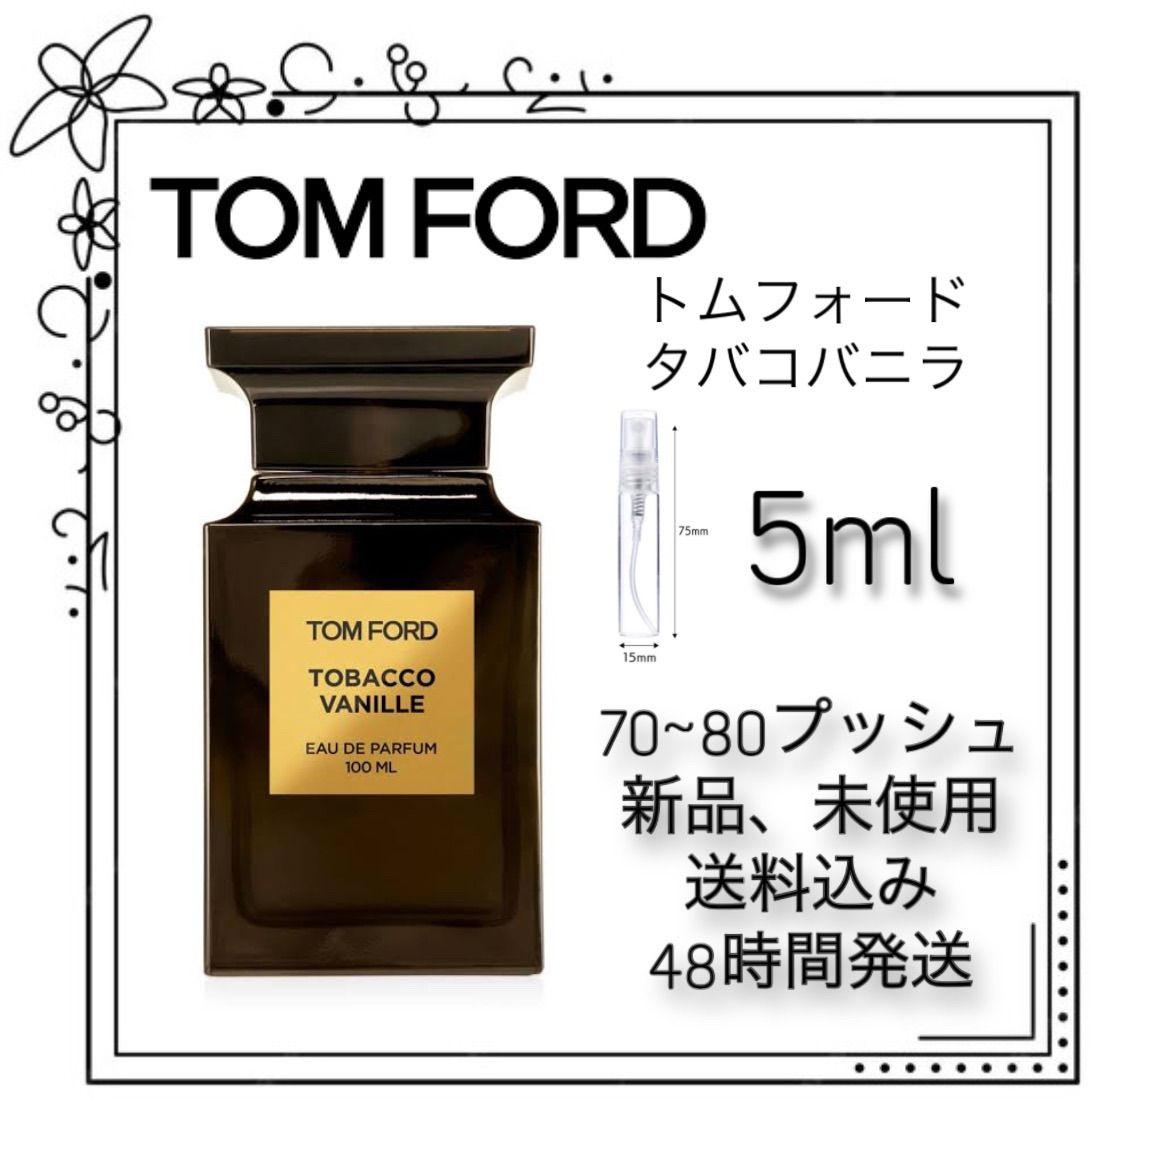 【限定品国産】TOM FORD トムフォード タバコバニラ オードパルファム 100ml ユニセックス